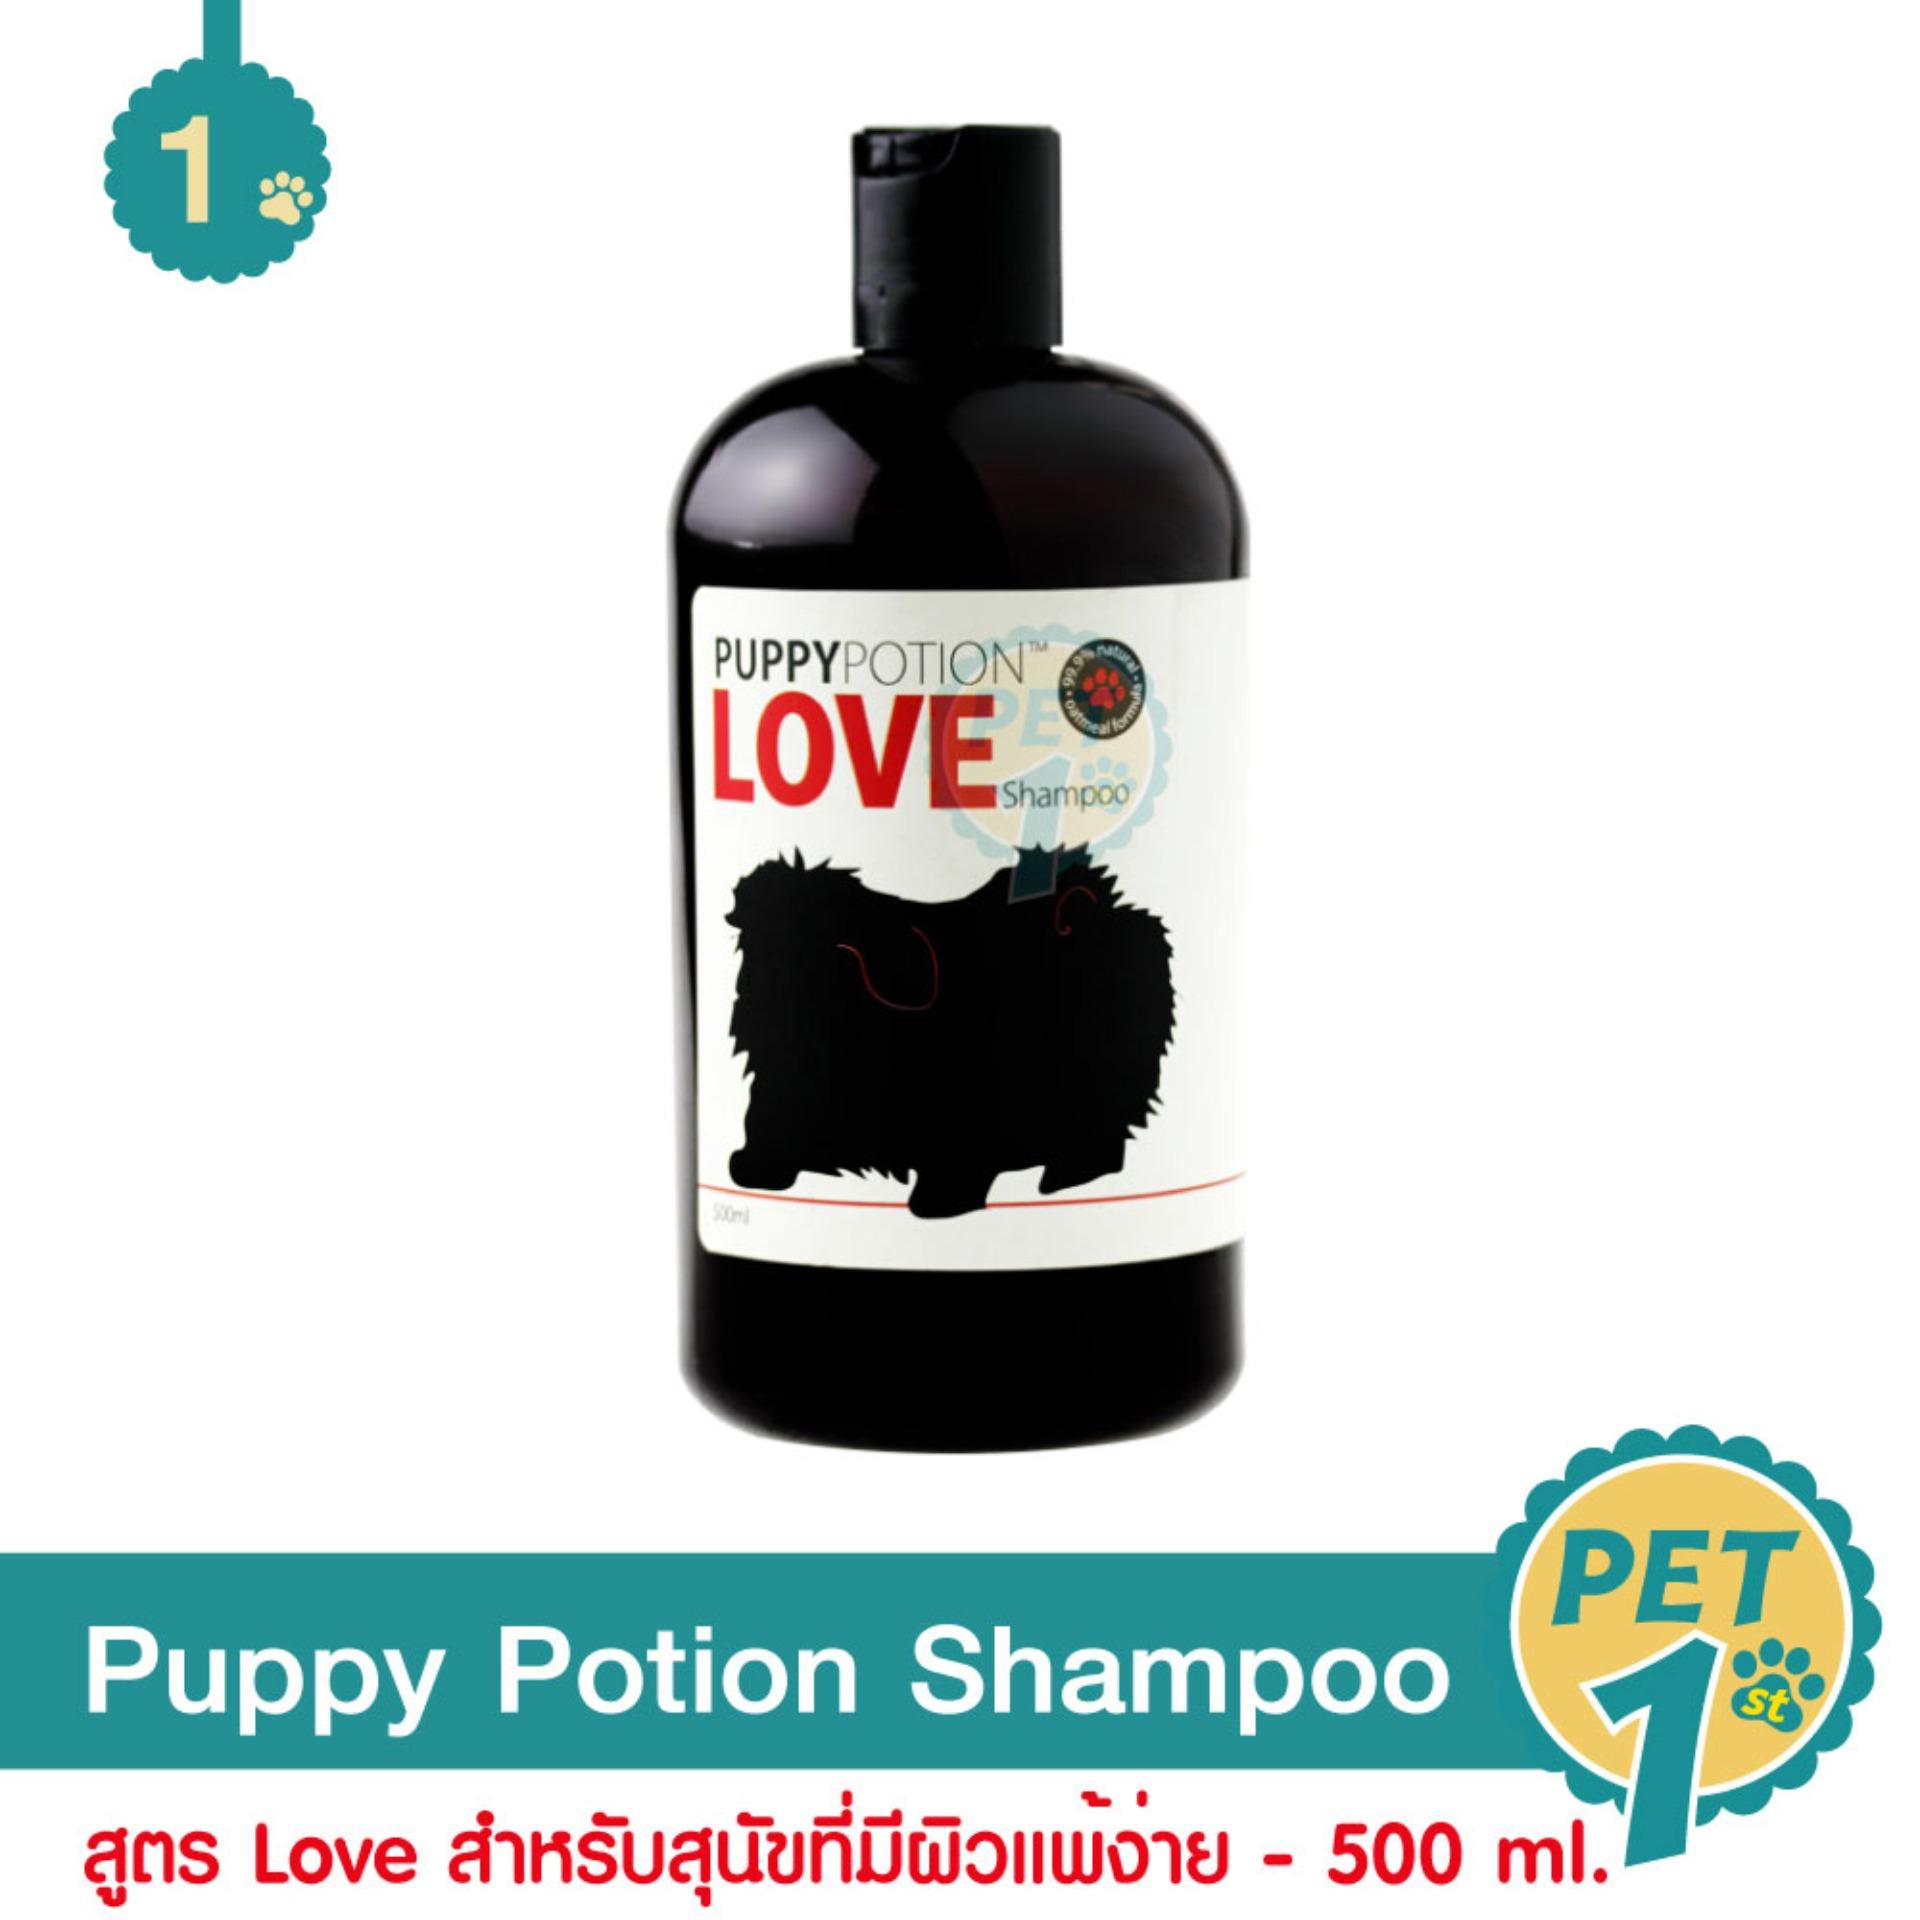 Puppy Potion Shampoo แชมพูสุนัข สูตร Love  ช่วยฟื้นฟูและบำรุงผิวหนัง ลดอาการแพ้ สำหรับสุนัขที่มีผิวบอบบาง แพ้ง่าย 500 ml.